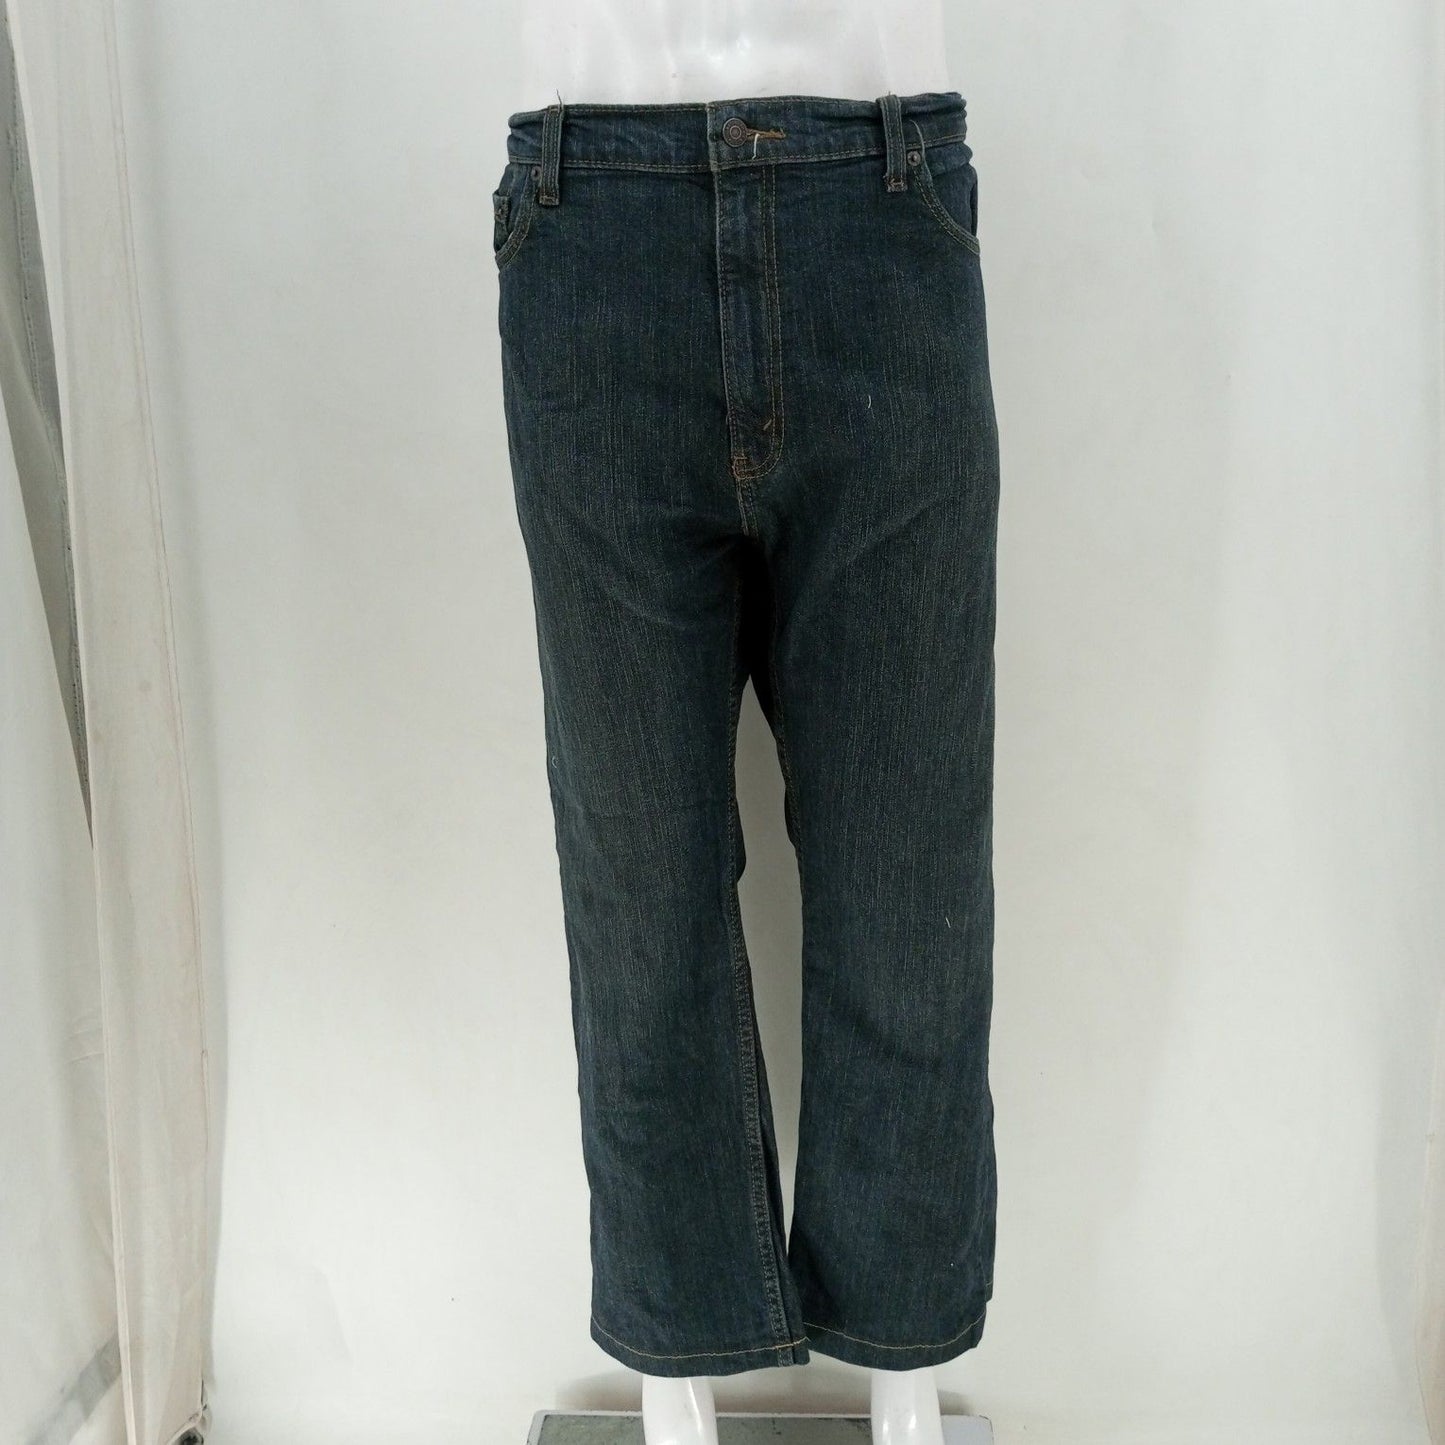 Levis Jeans  24-30 Count Box